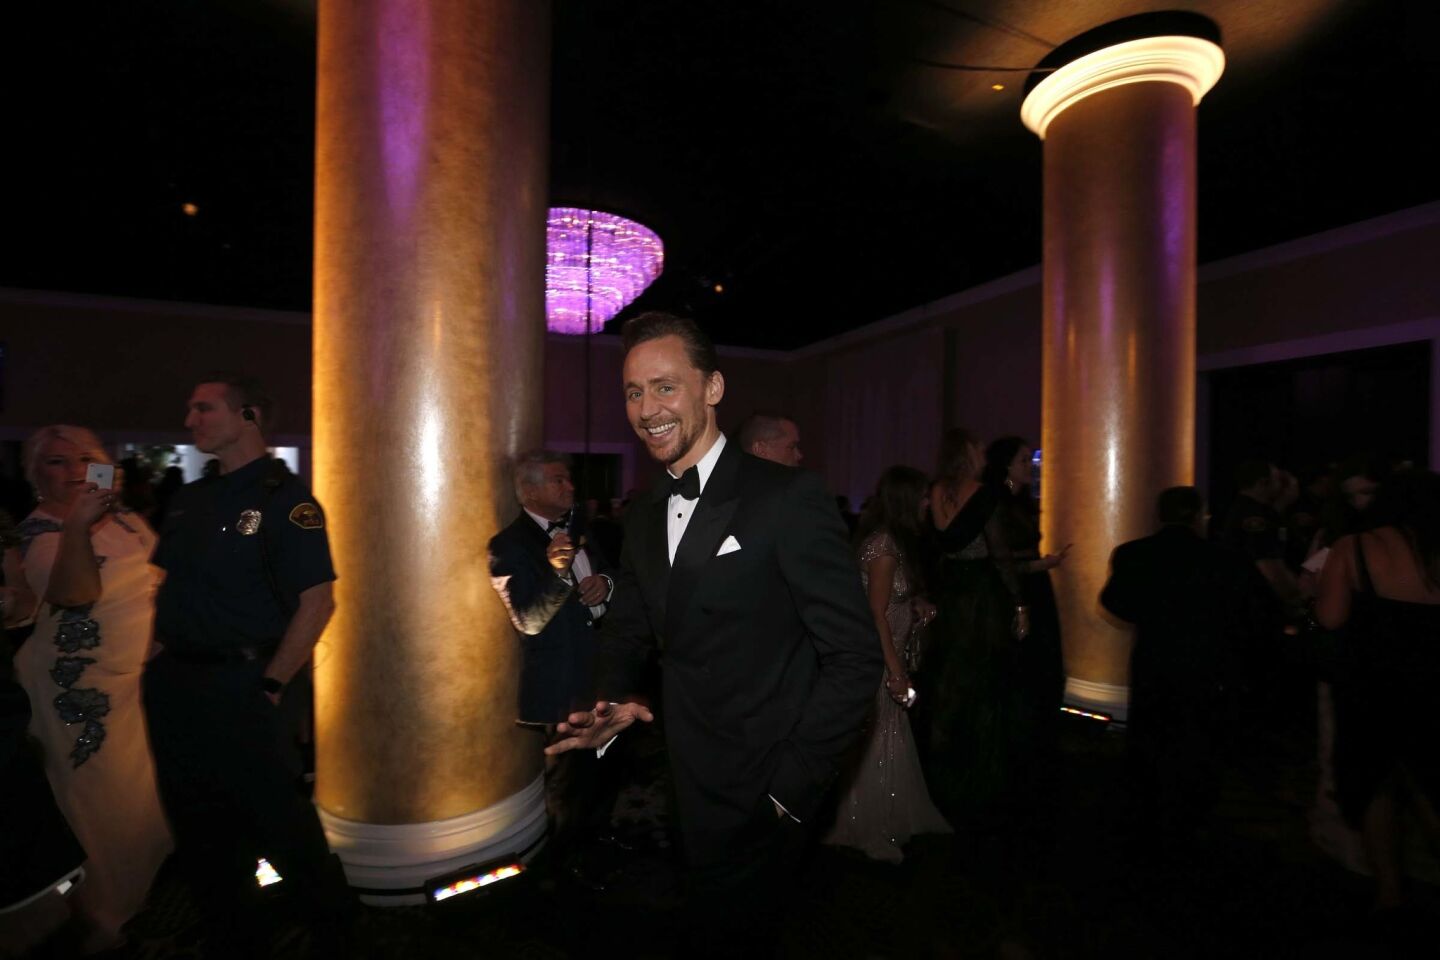 Golden Globes: Inside the ballroom